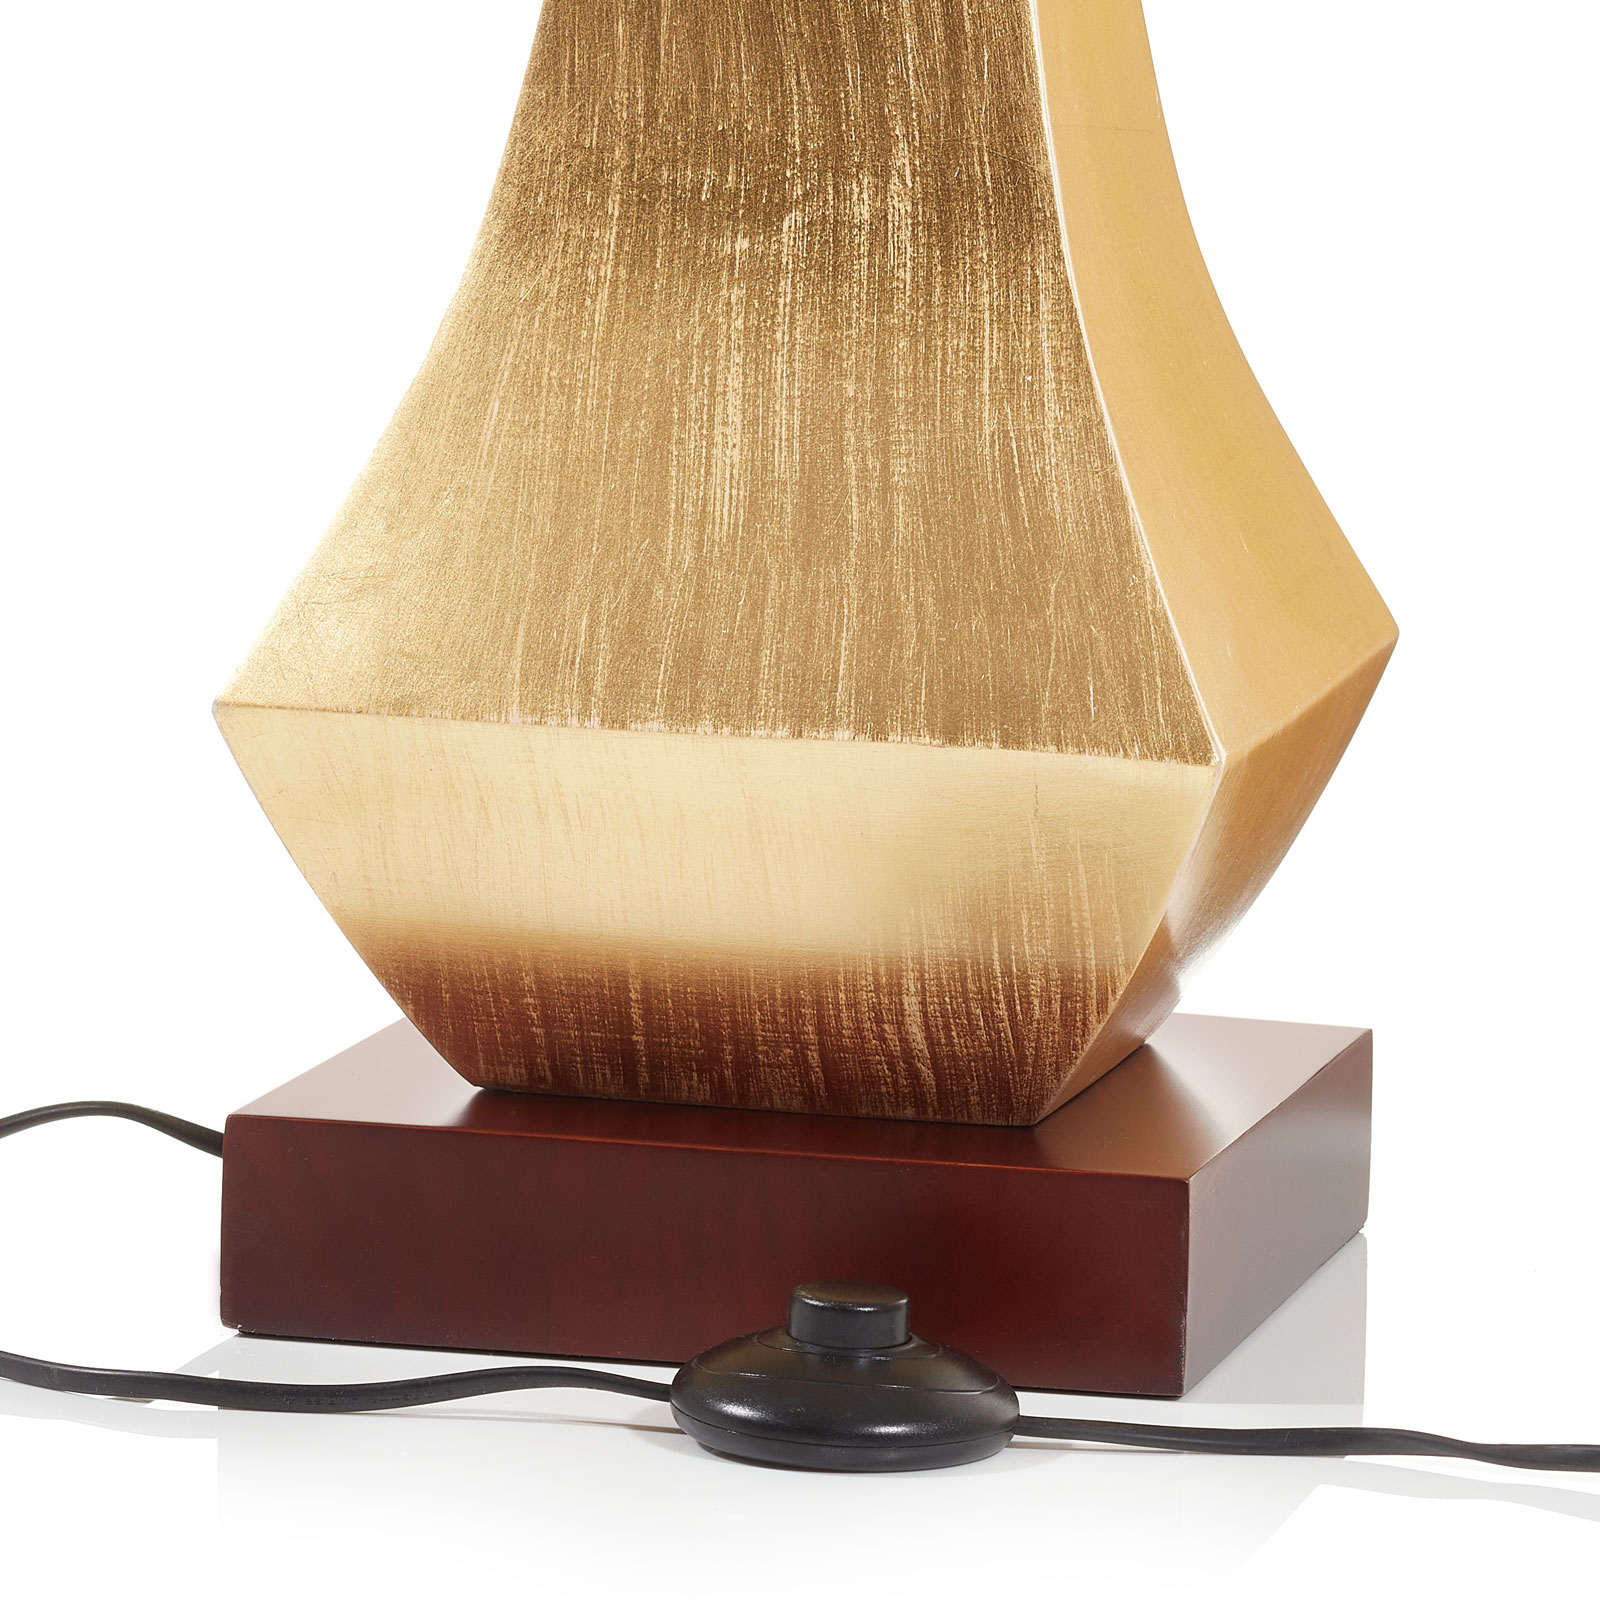 Lampa stojąca o szlachetnym designie, złota